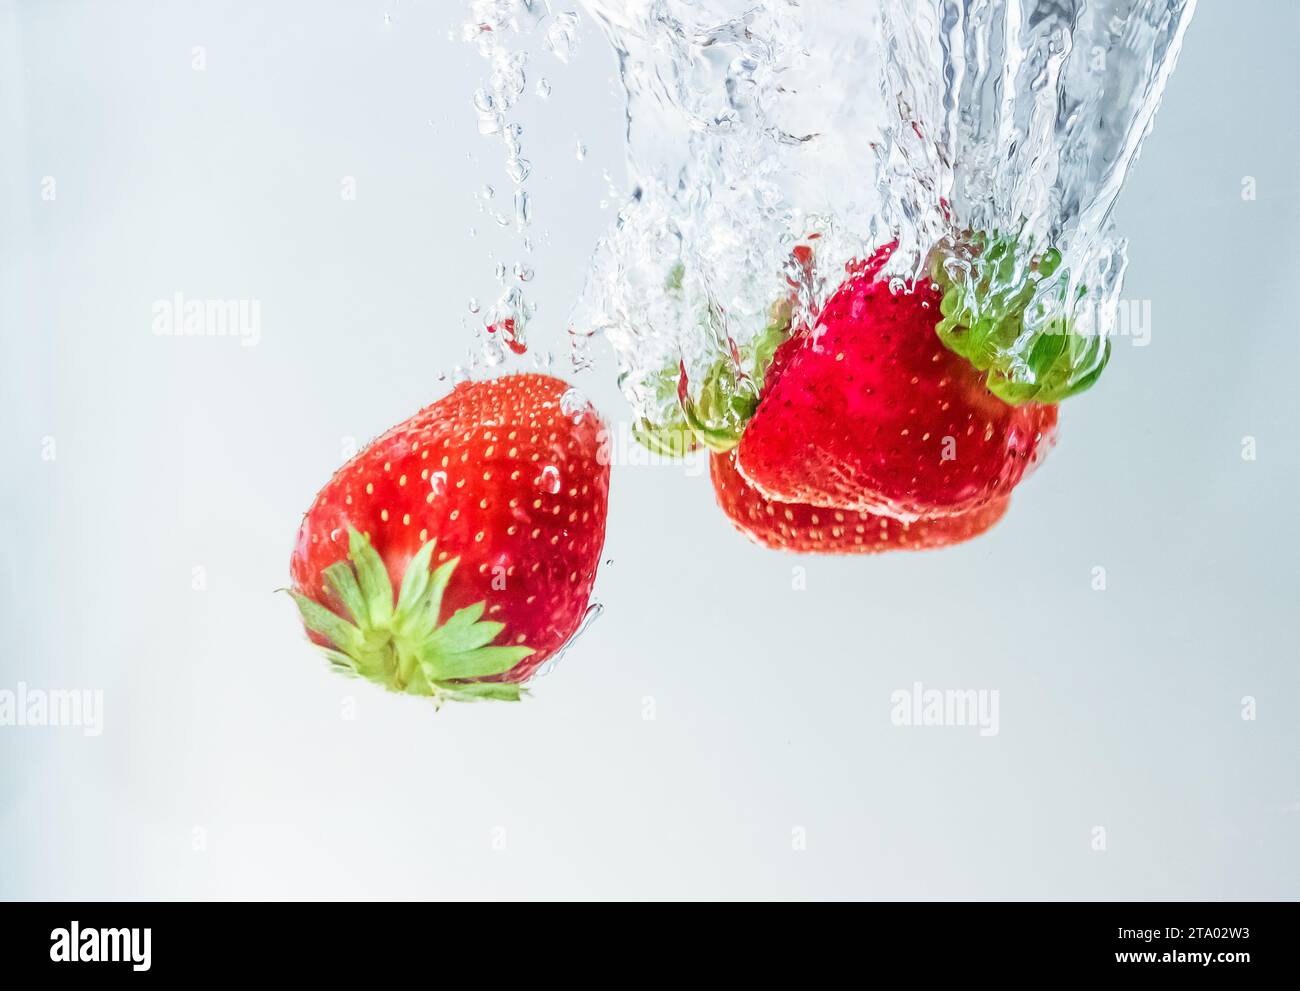 fragole di frutta fresca rossa che cadono in acqua con spruzzi su fondo bianco, fragole per la salute e la dieta, concetto nutrizionale Foto Stock